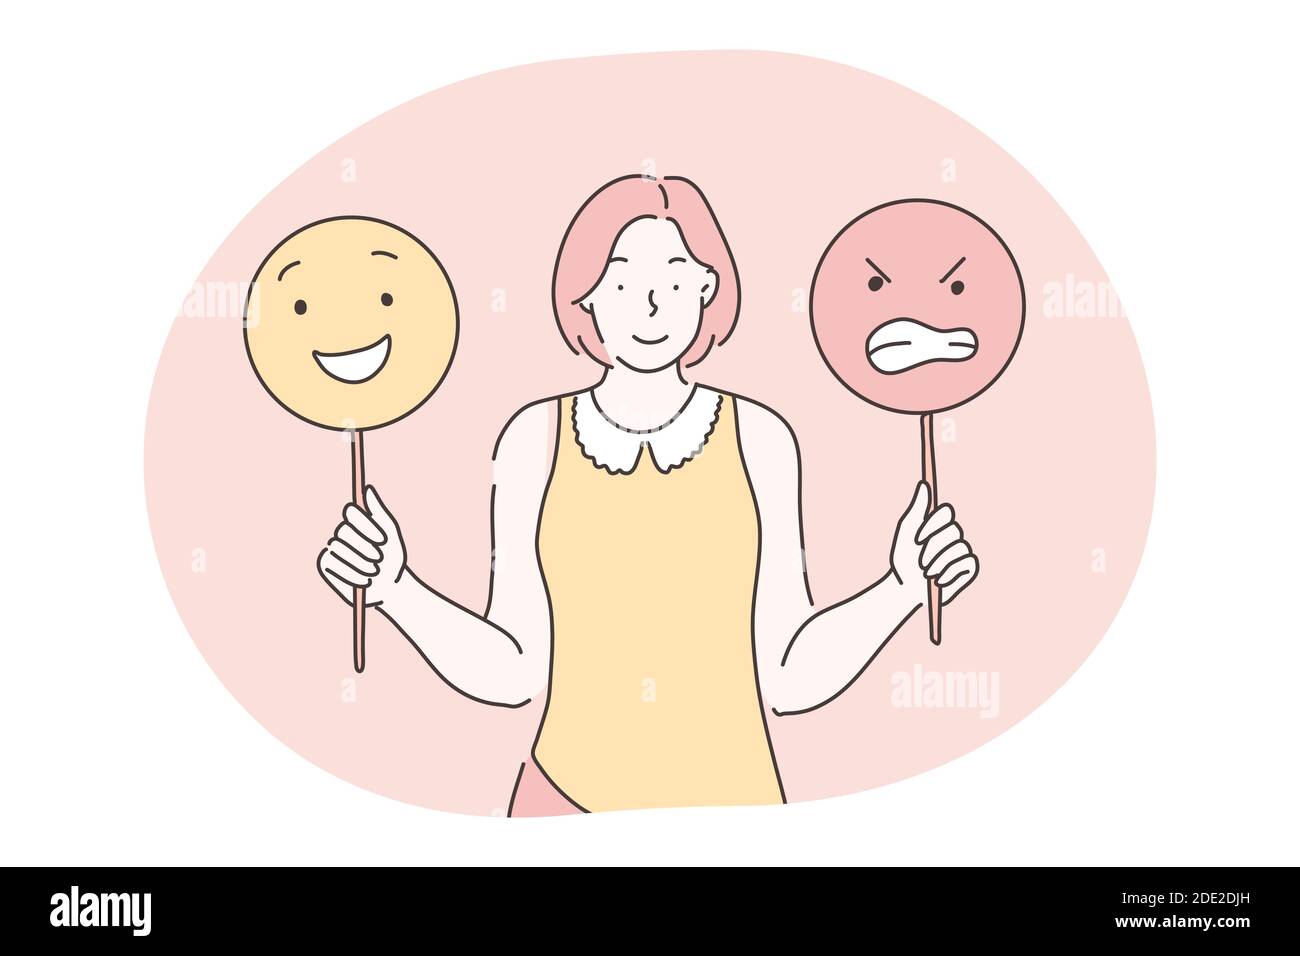 Emotionen, Emoji, verschiedene Gesichtsausdrücke Konzept. Junge lächelnde Frau Zeichentrickfigur stehen und halten Zeichen mit positiven und aggressiven e Stock Vektor